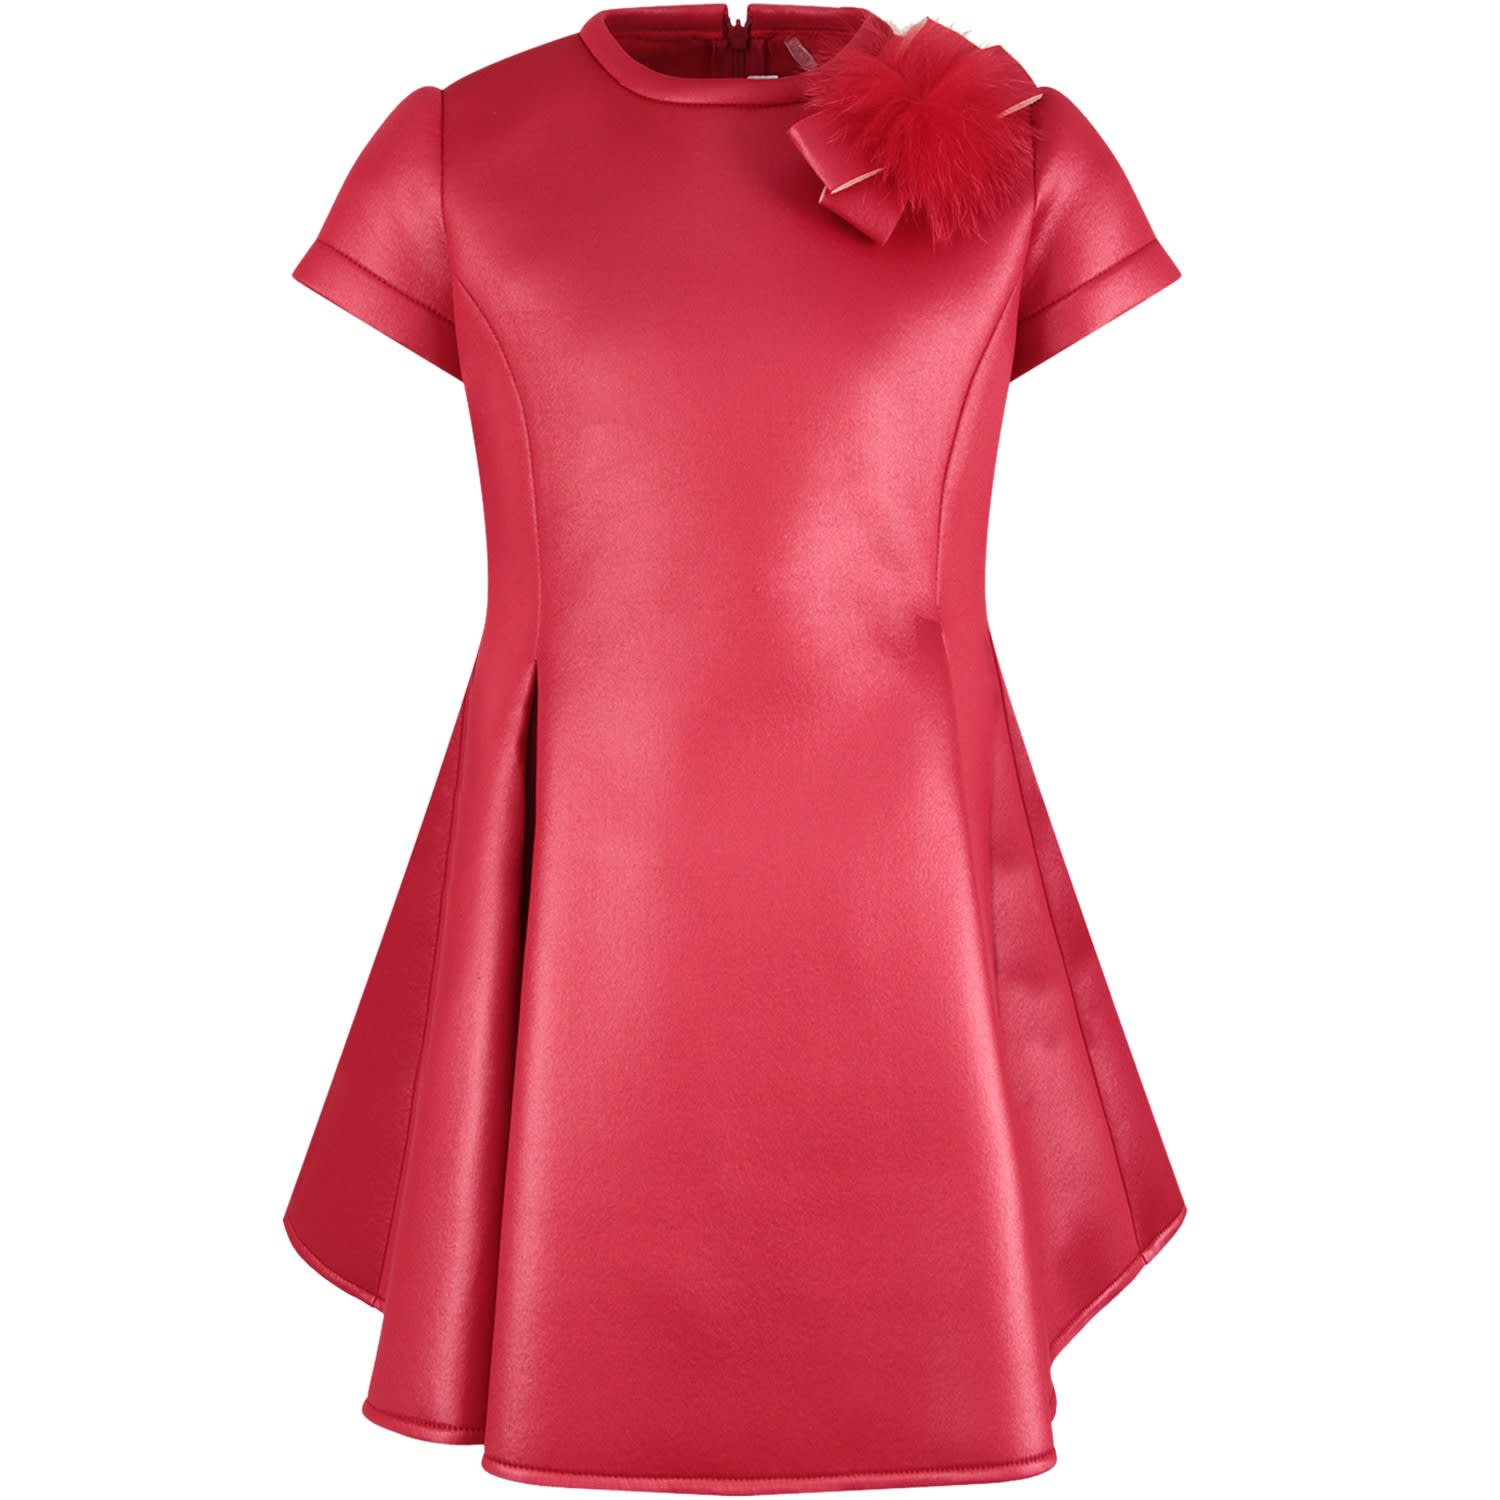 Loredana Red Dress For Girl With Pom-pom